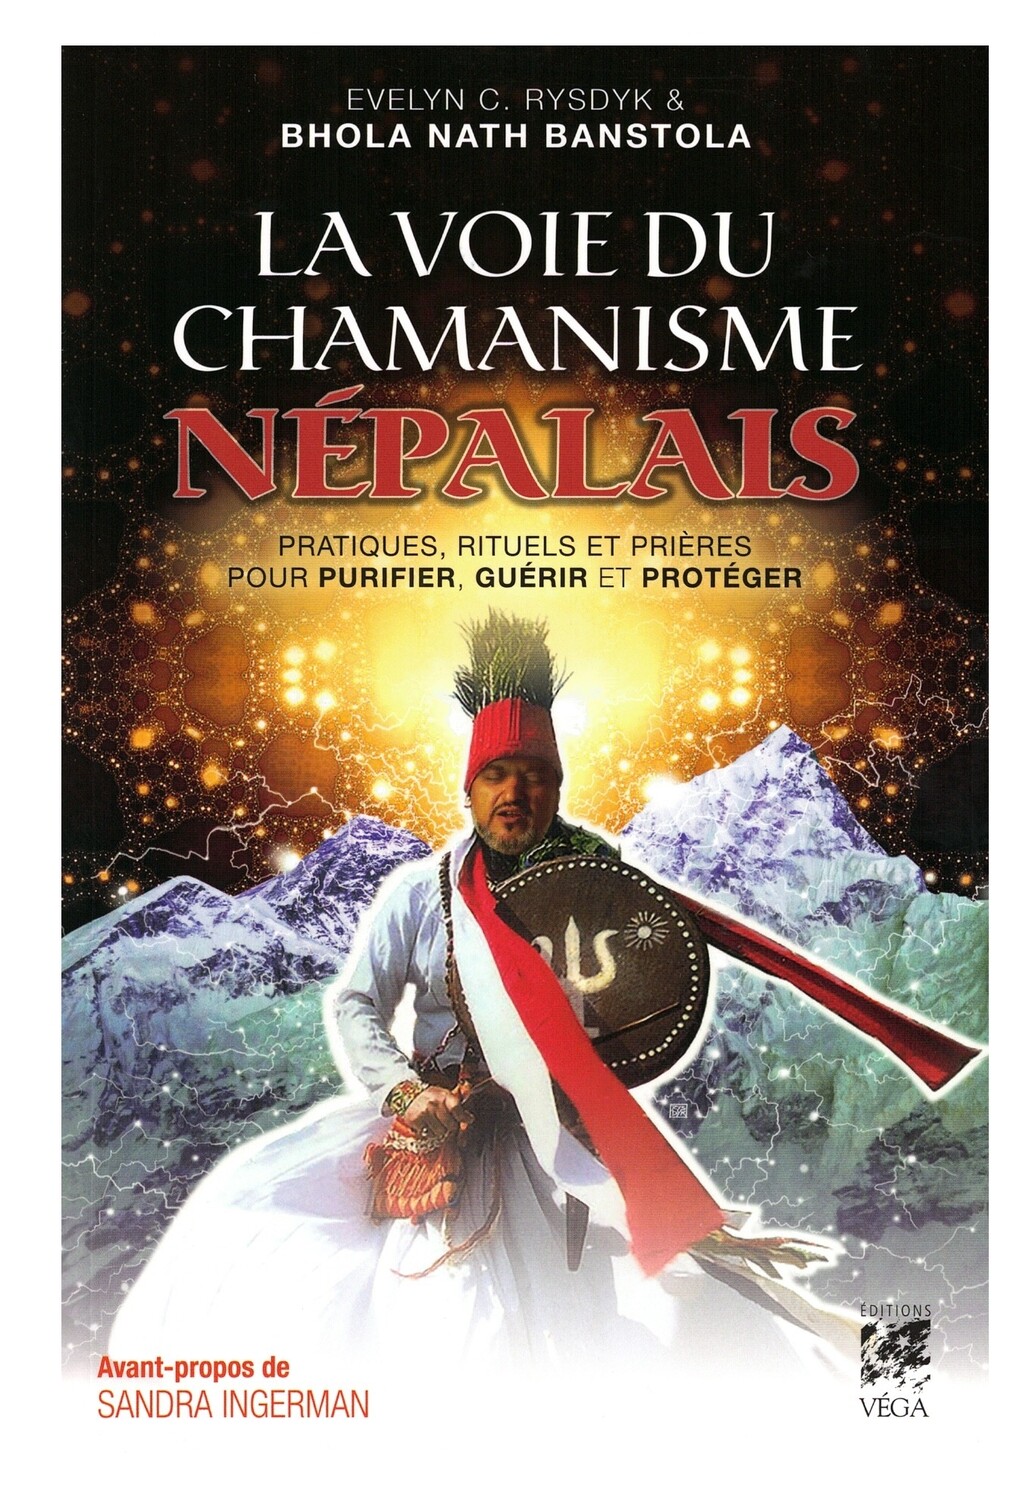 La voie du chamanisme Nepalais